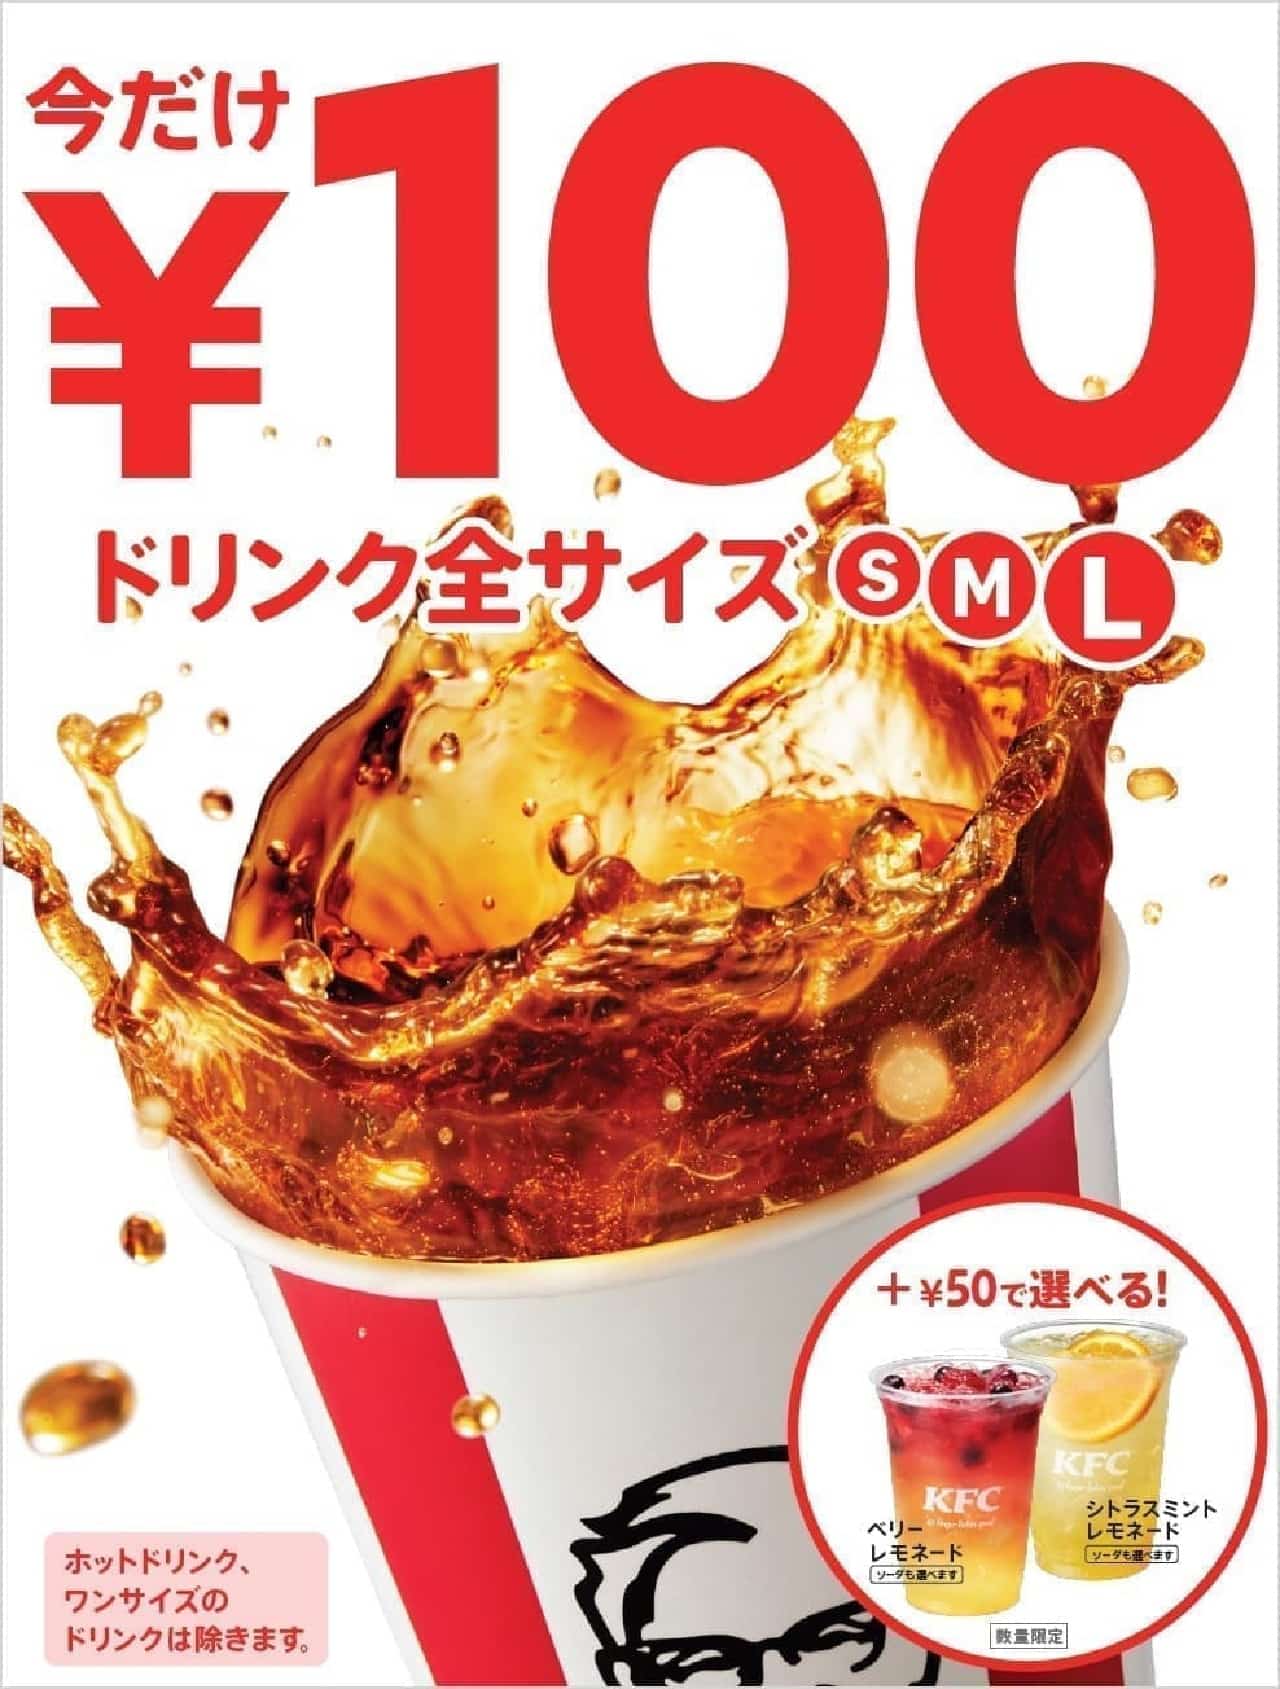 100 円 ケンタッキー